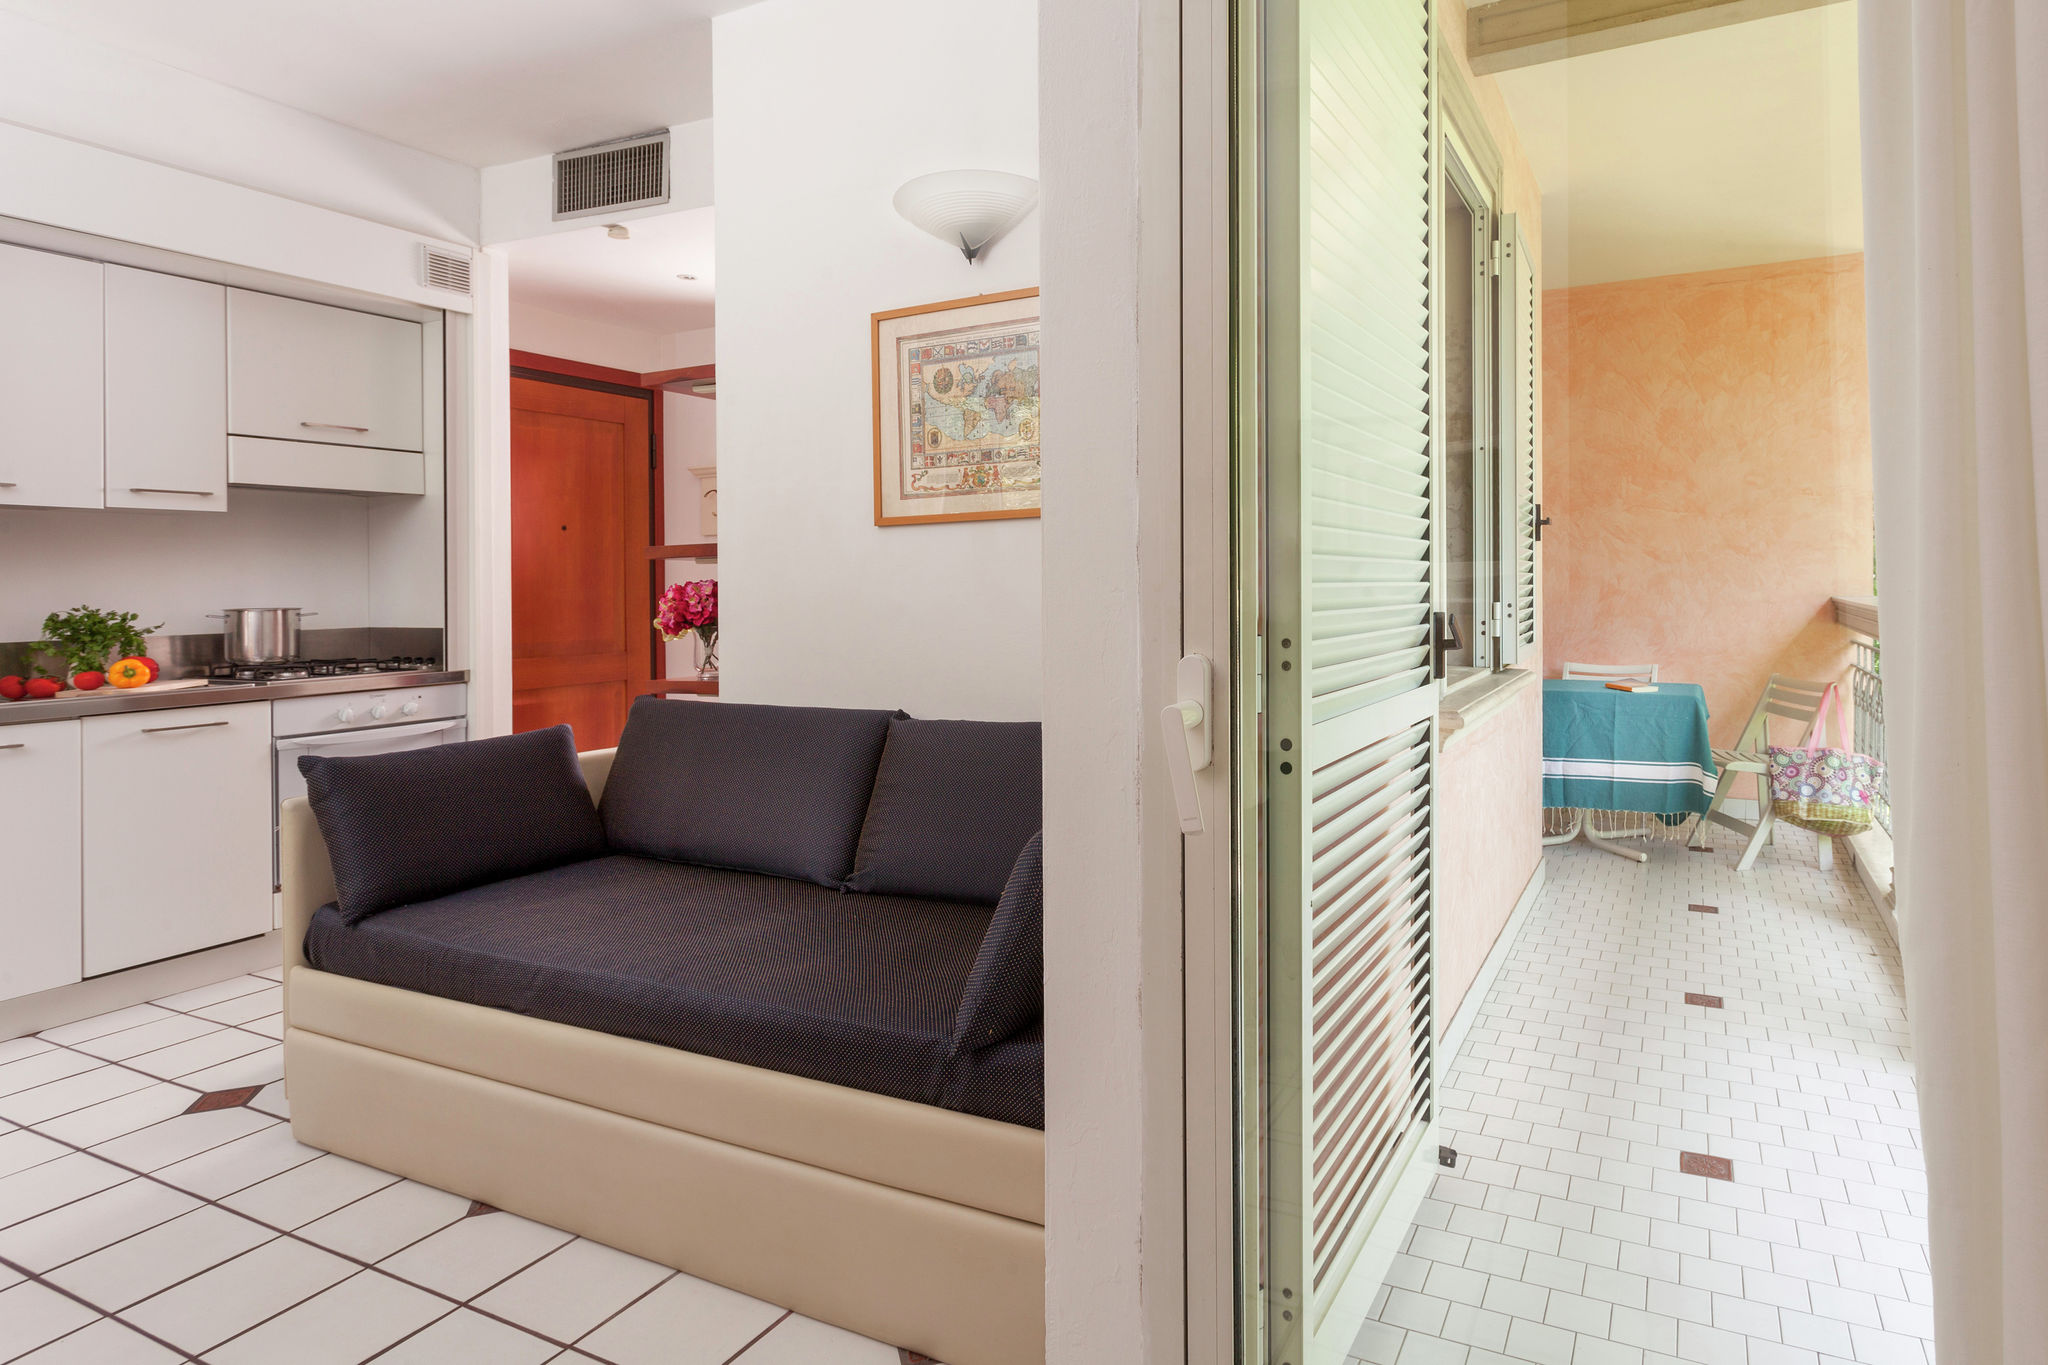 Appartement in villa met zwembad in rustige centrale zone, 150m van zee